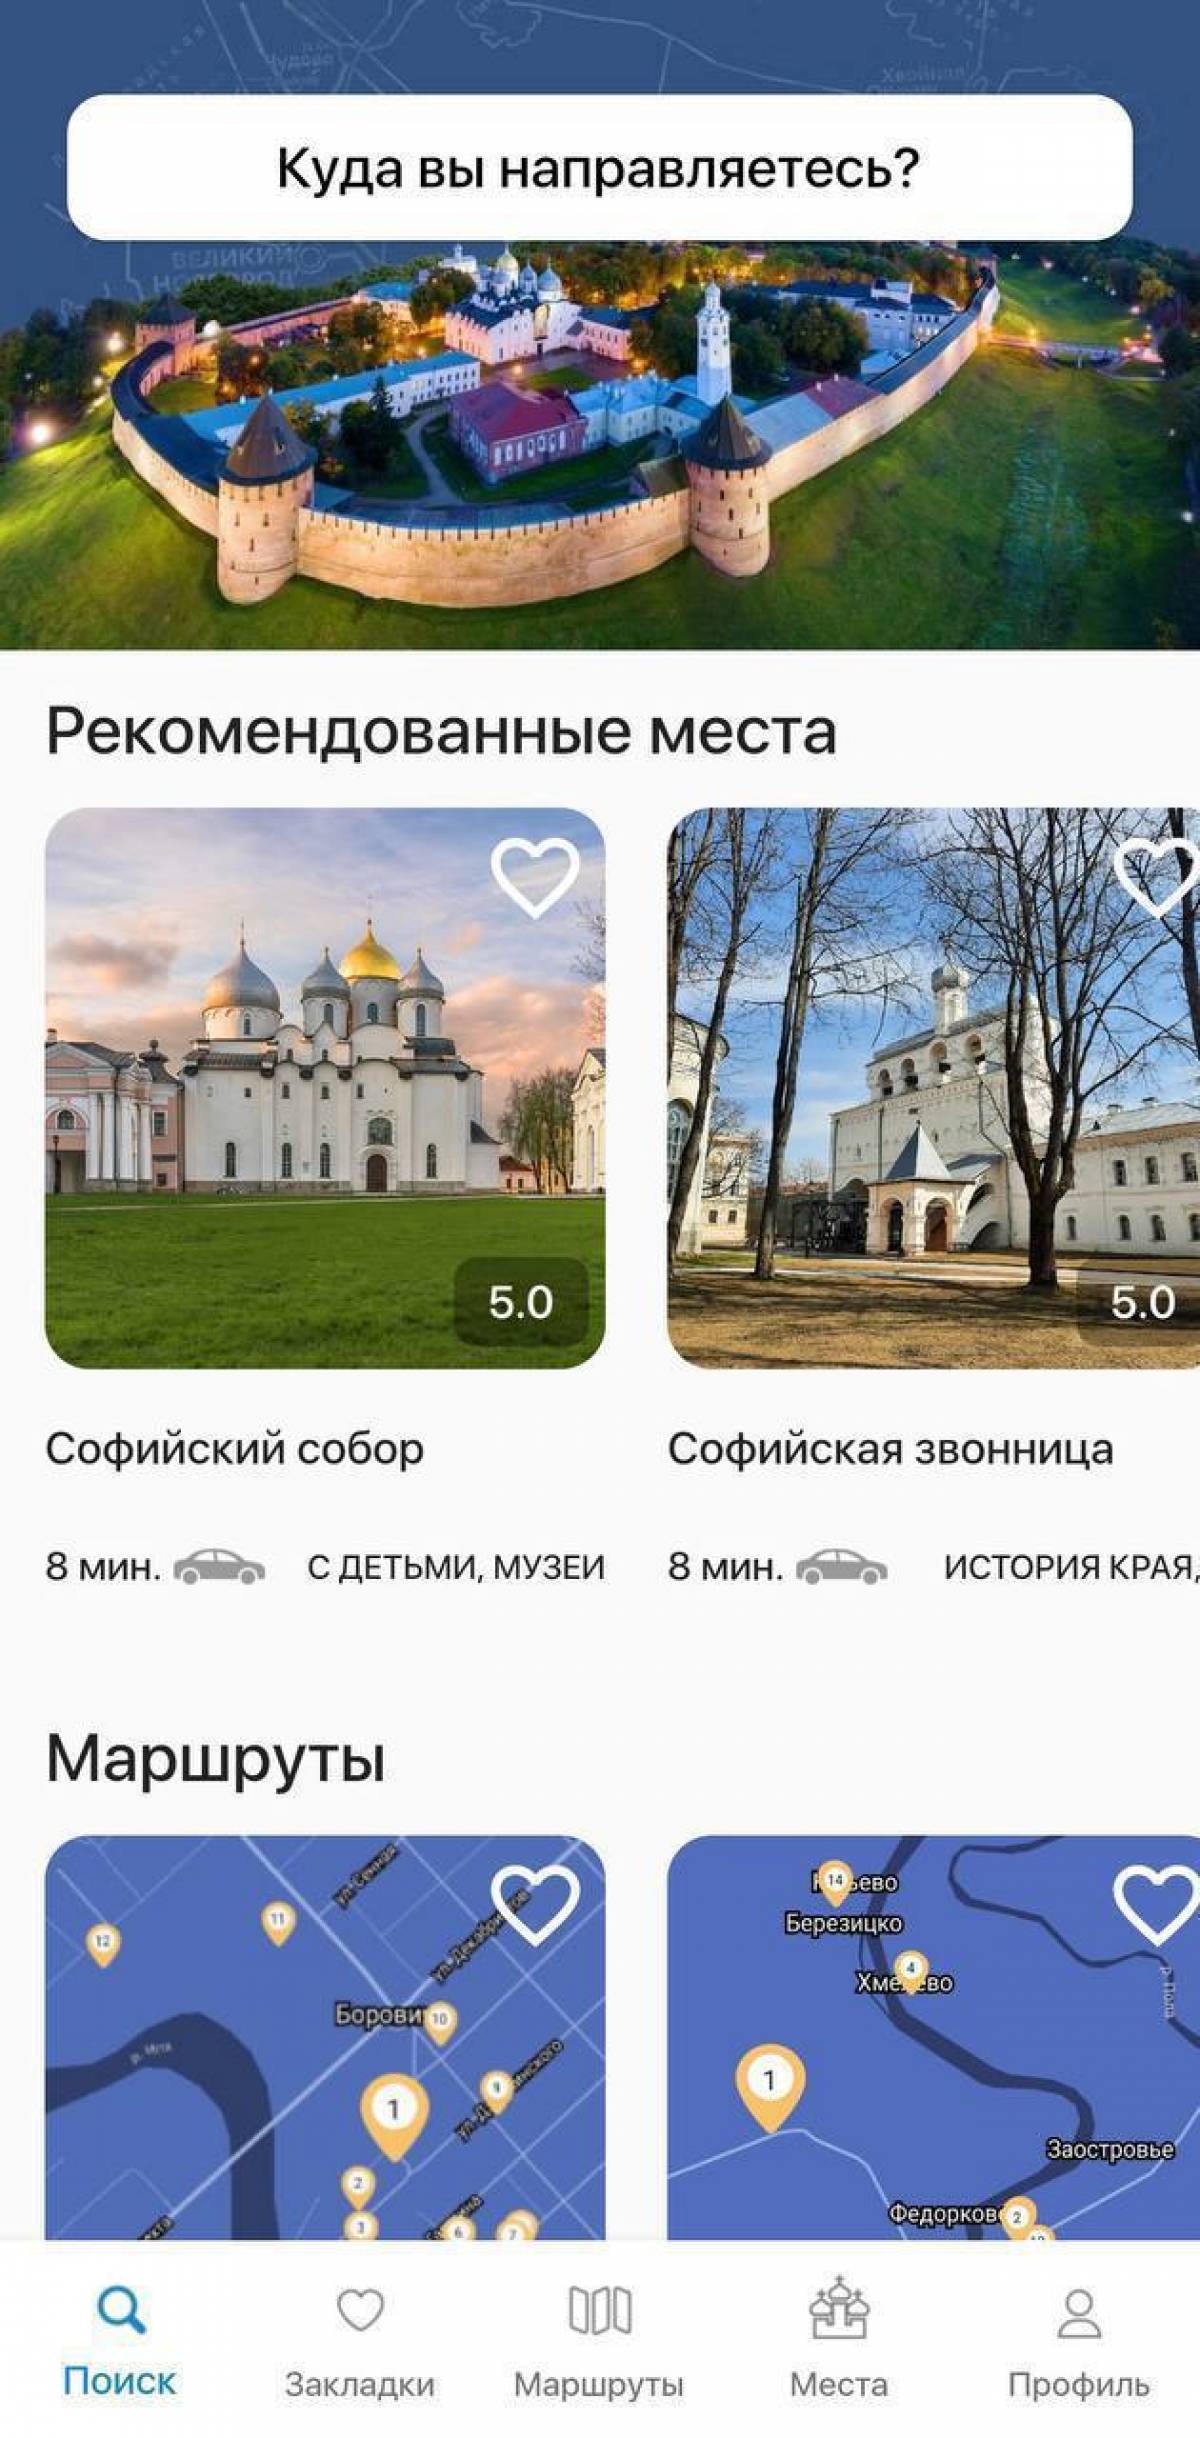 Команда туристического офиса «Русь Новгородская» создала бесплатное приложение, которое включает в себя информацию о достопримечательностях.